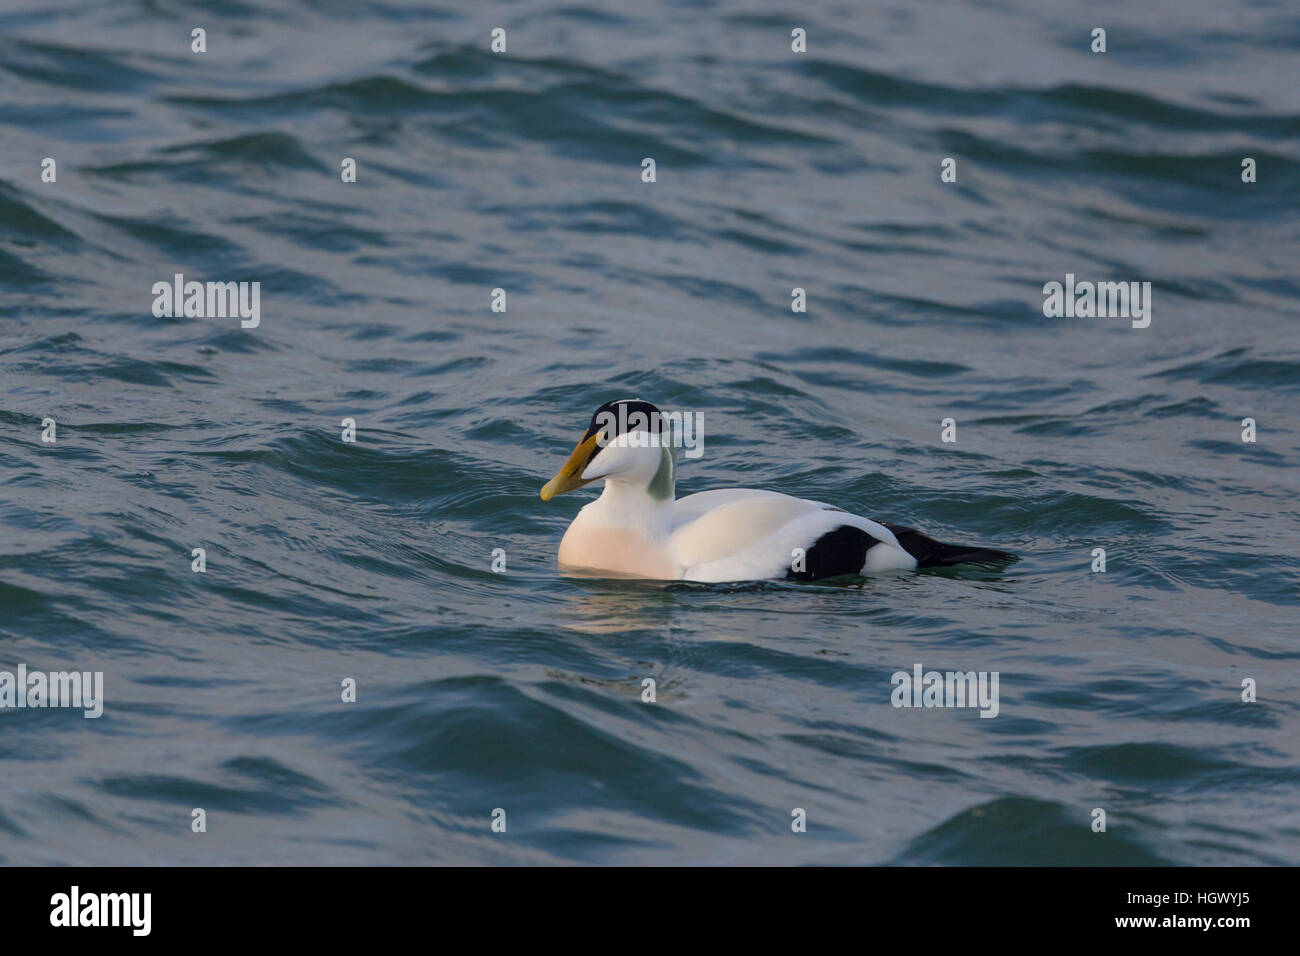 Comune maschio eider duck nuotare nel mare blu Foto Stock